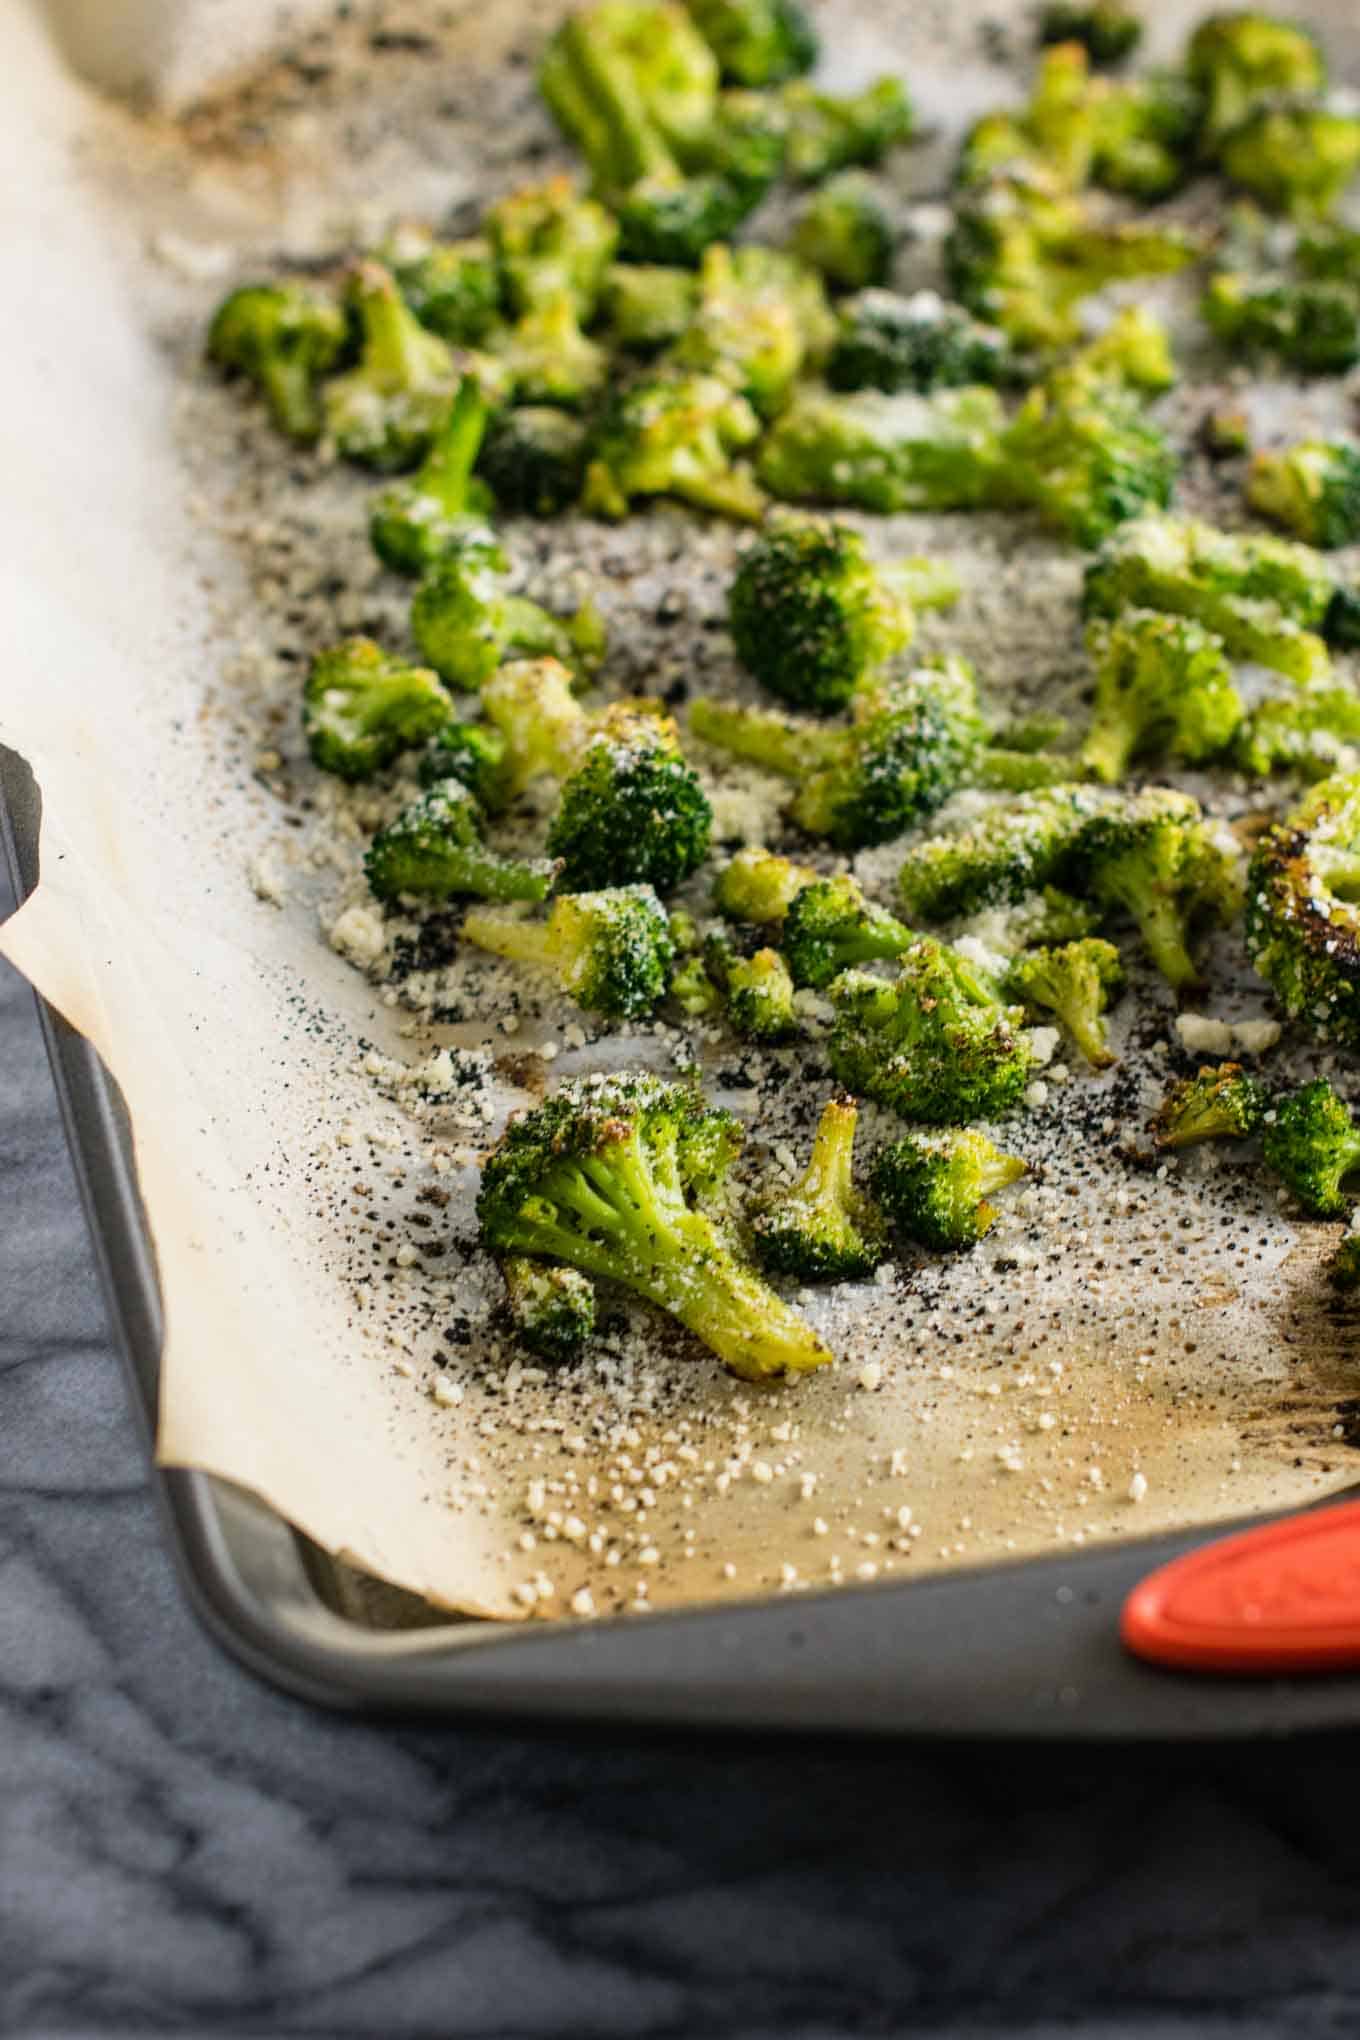  finished roasted broccoli on the baking sheet